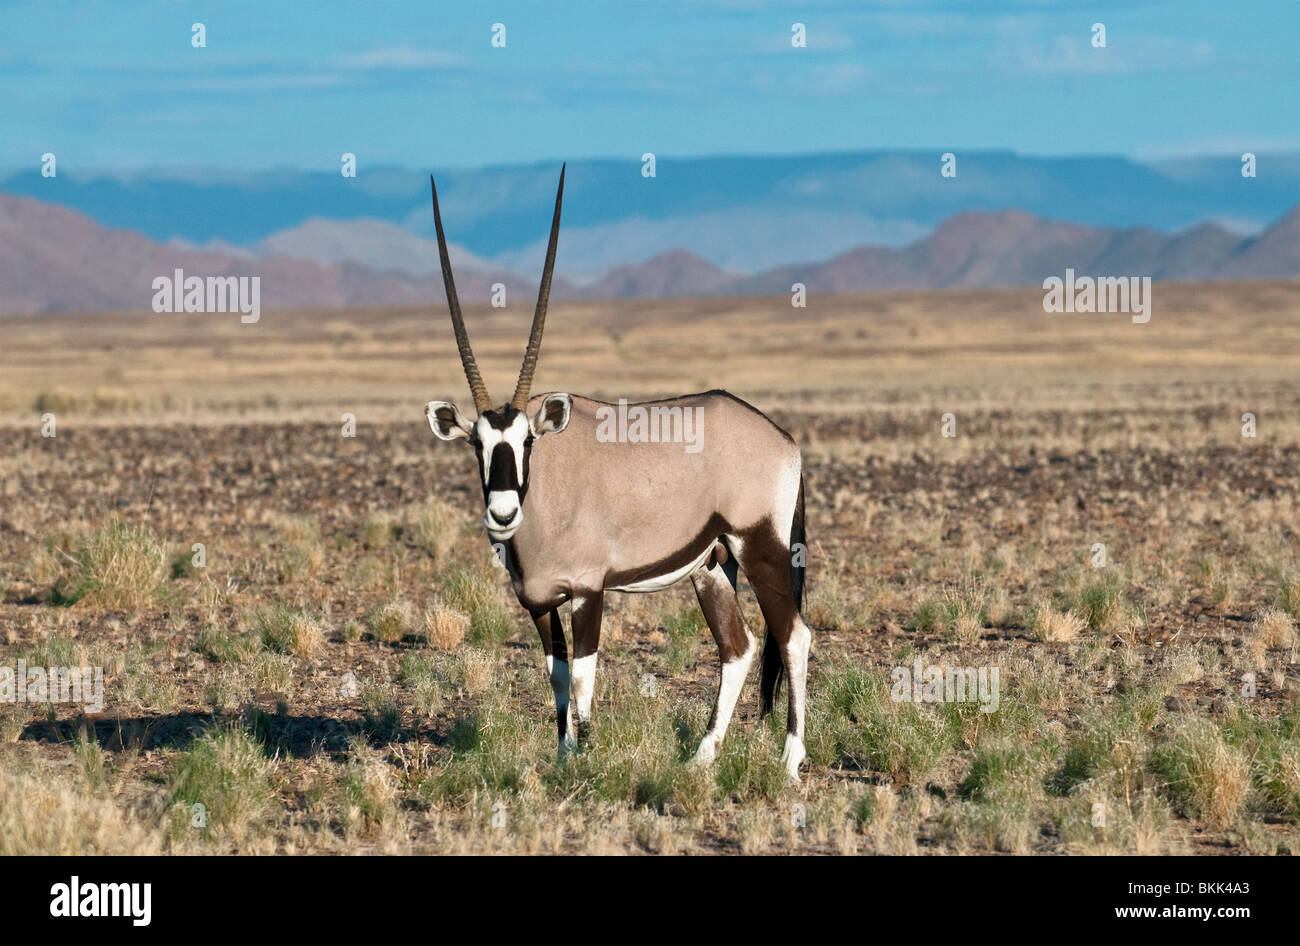 Gemsbock oder Oryx am Straßenrand zum Sossusvlei in der Nähe von Sesriem mit Namib-Naukluft-Gebirge in der Ferne, Namibia Stockfoto